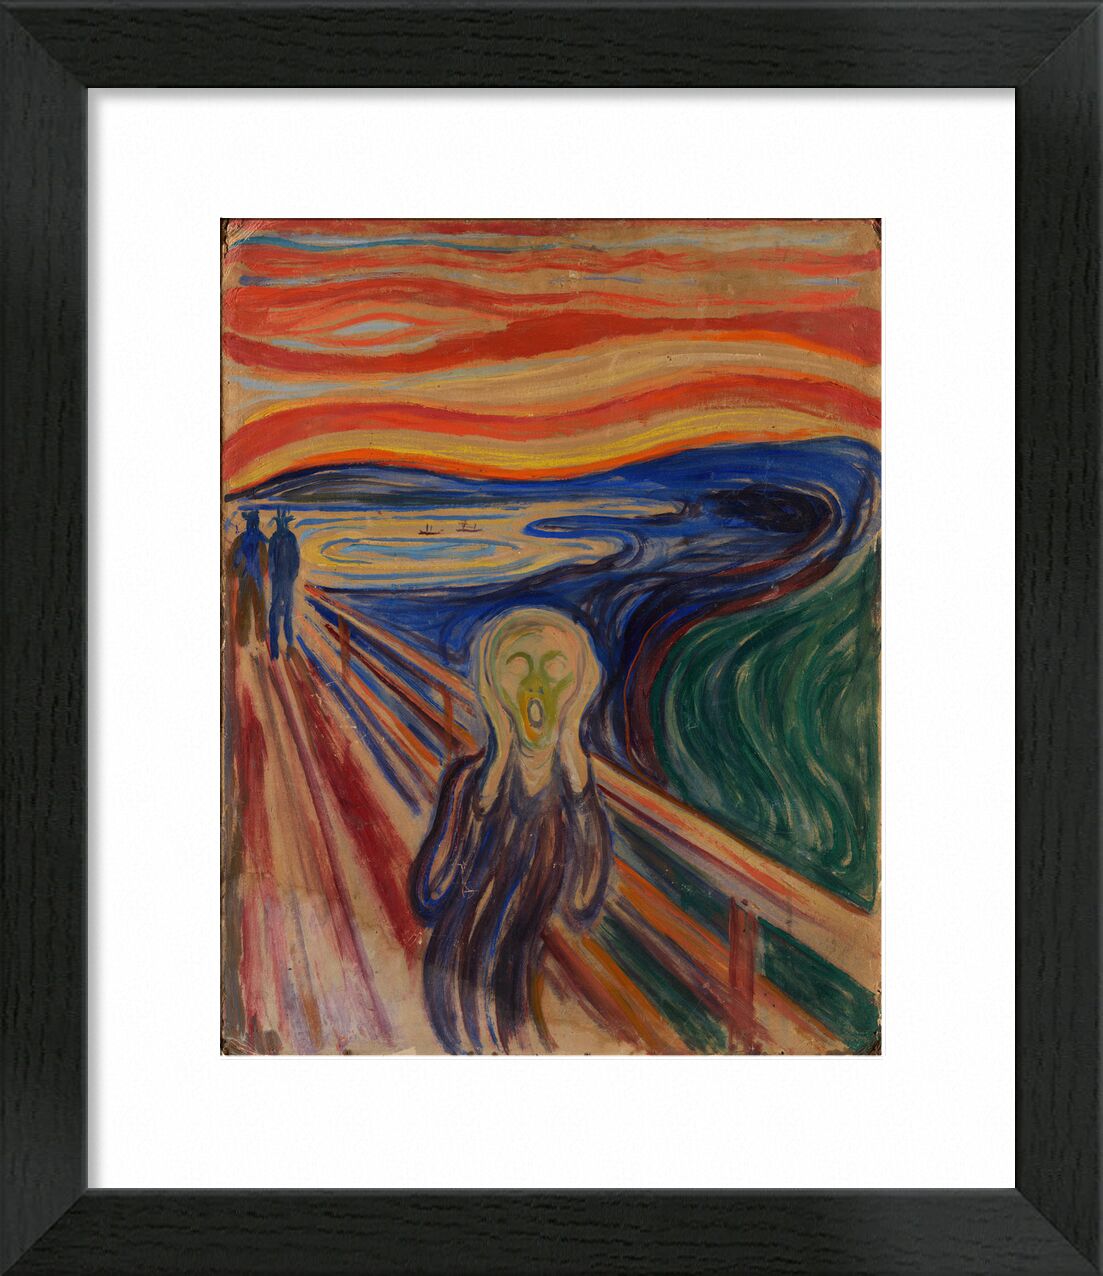 Der Schrei - Edvard Munch von Bildende Kunst, Prodi Art, Malerei, Edvard Munch, schreien, leichte Schmerzen, Pein